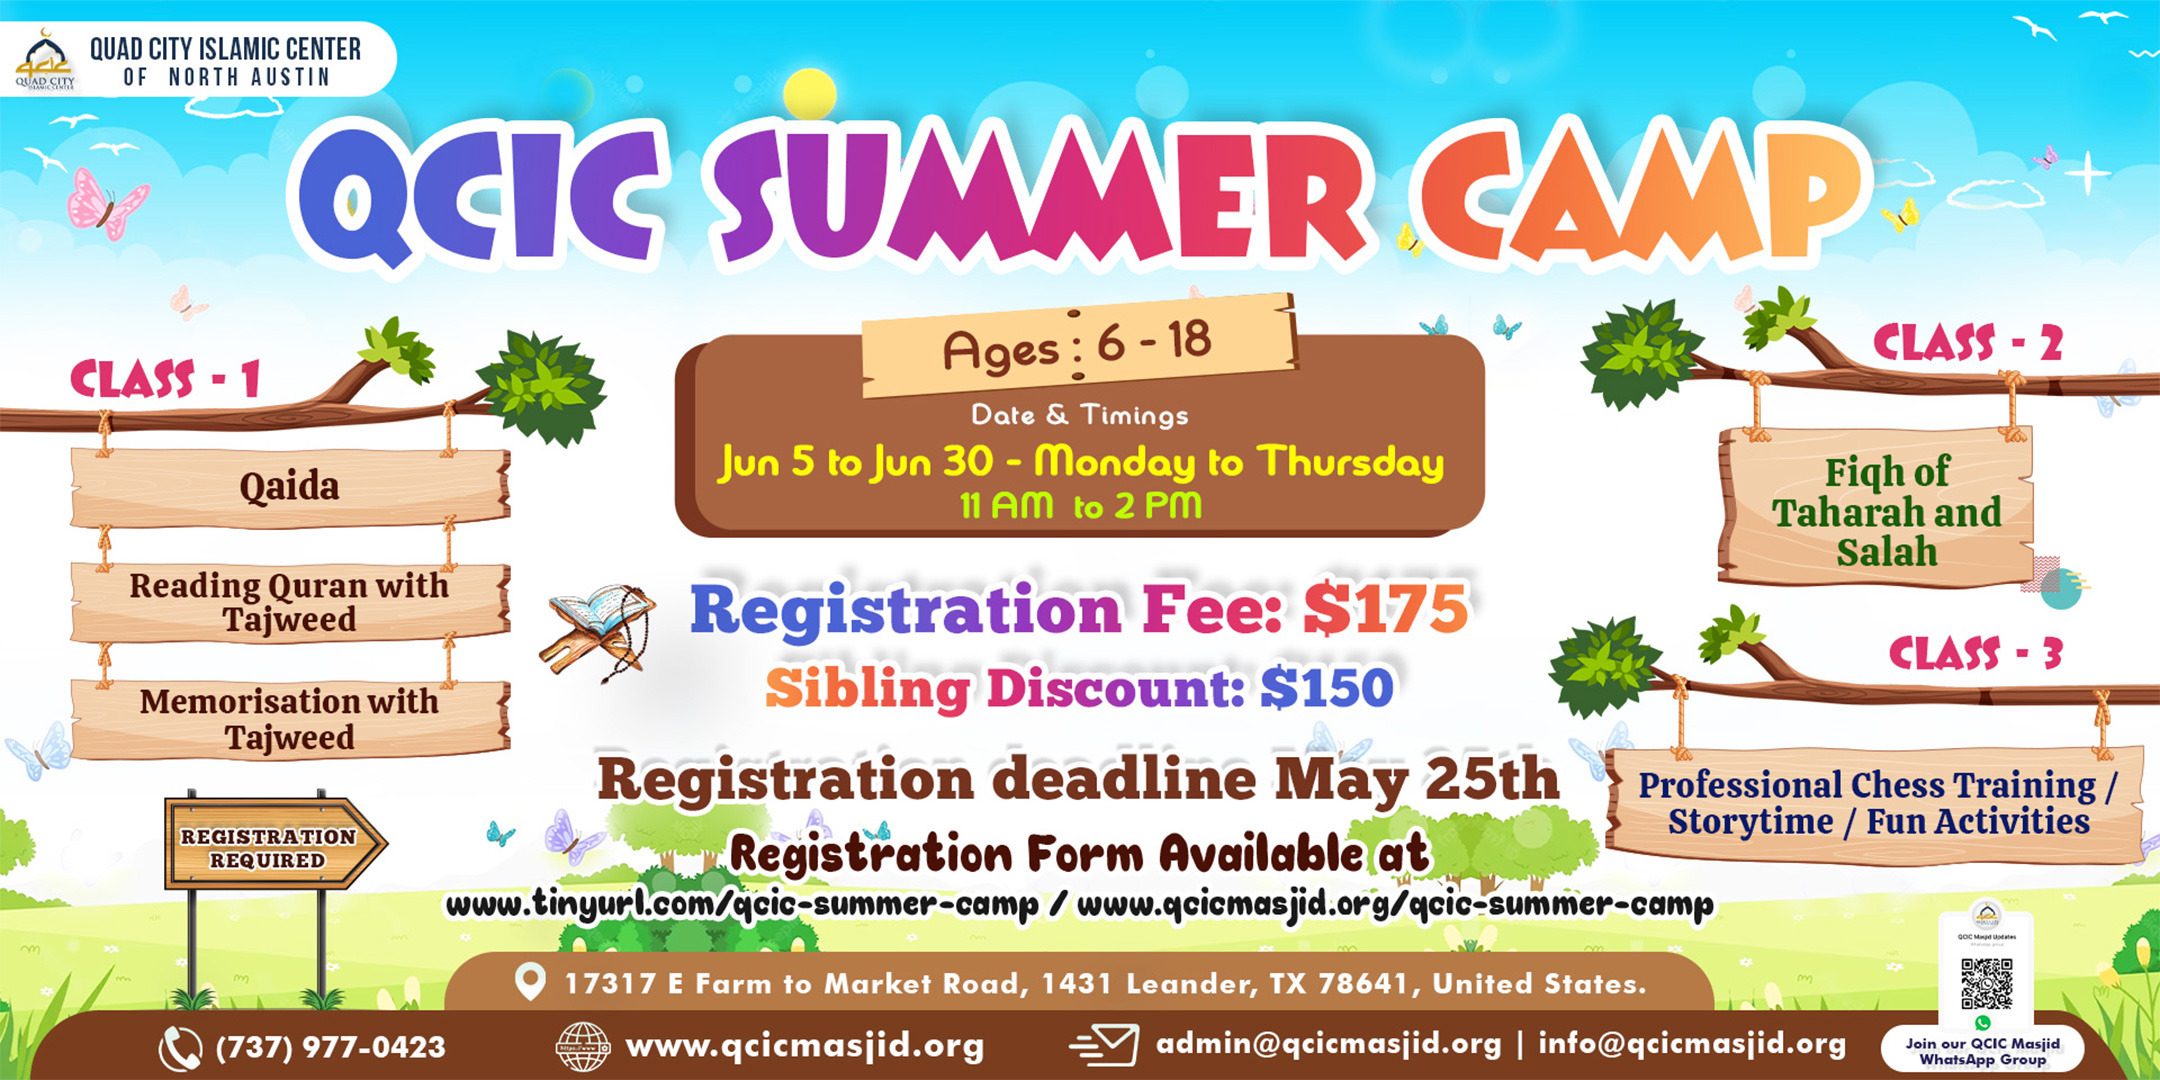 QCIC Summer Camp